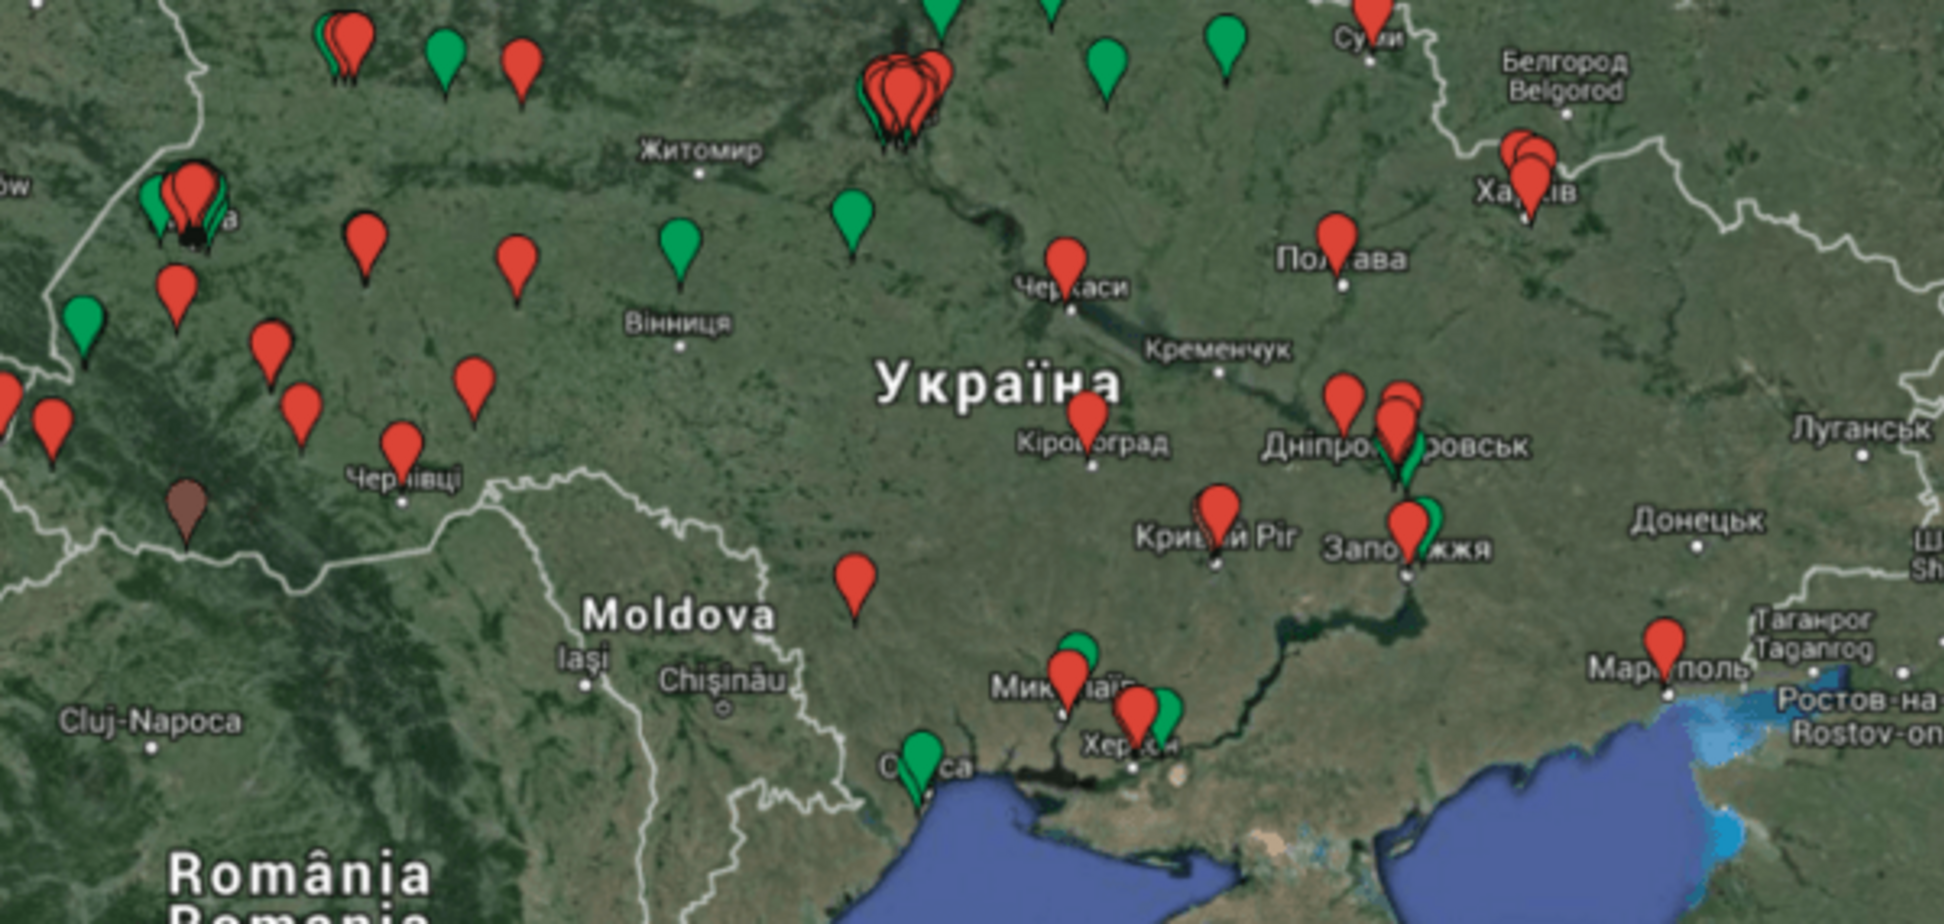 Готовимся к празднику: волонтеры создали онлайн-карту живых елок в Украине